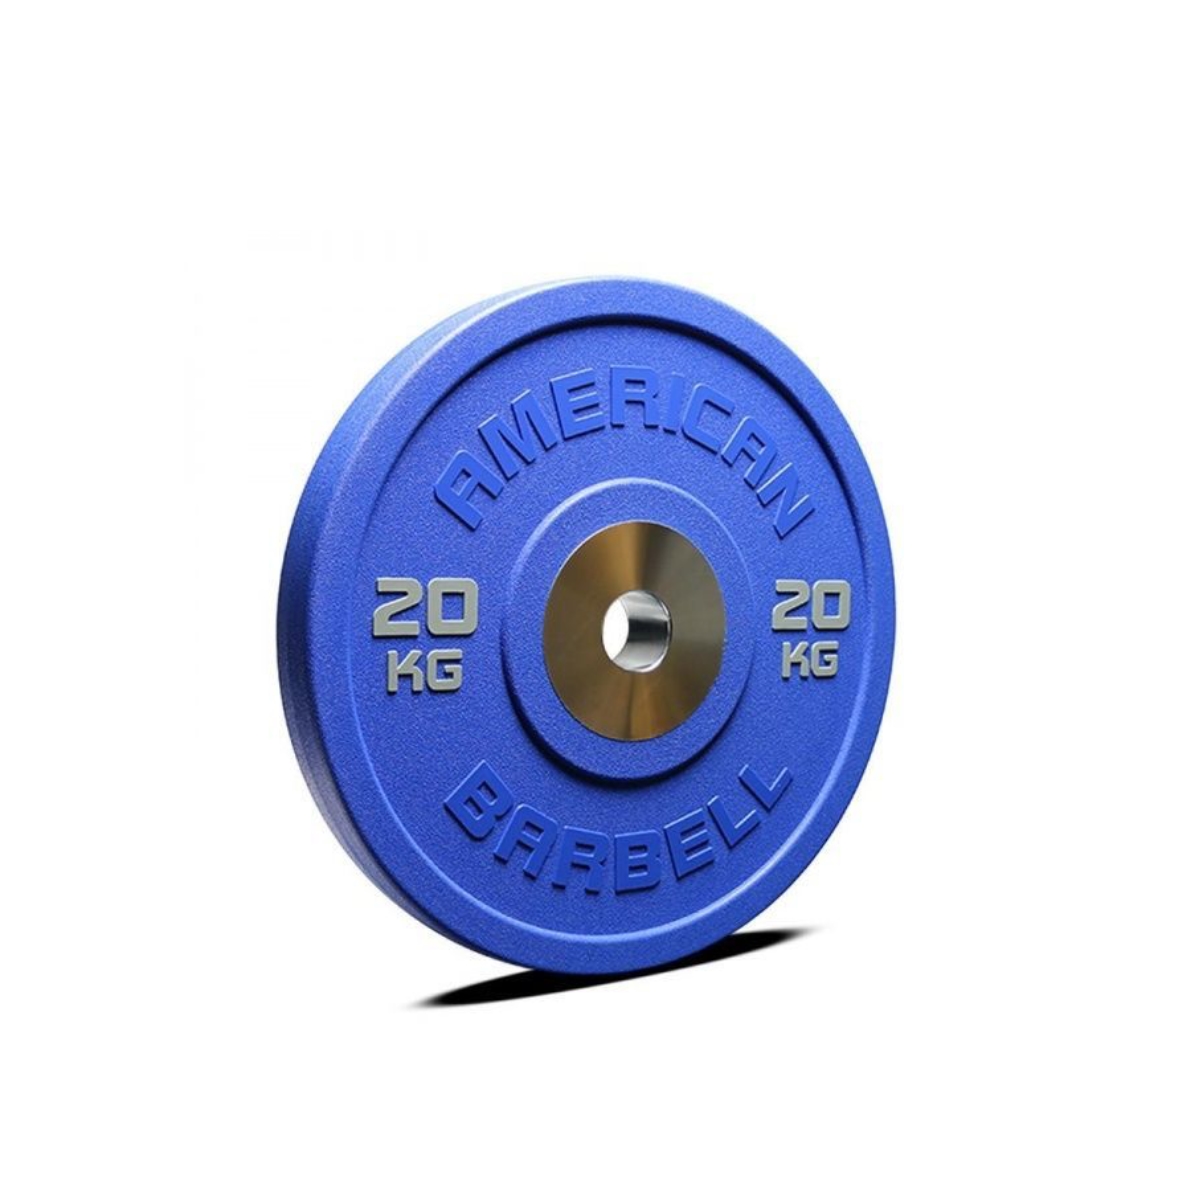 Brug American Barbell Color Urethane Pro Series Bumper Plate 20 kg til en forbedret oplevelse